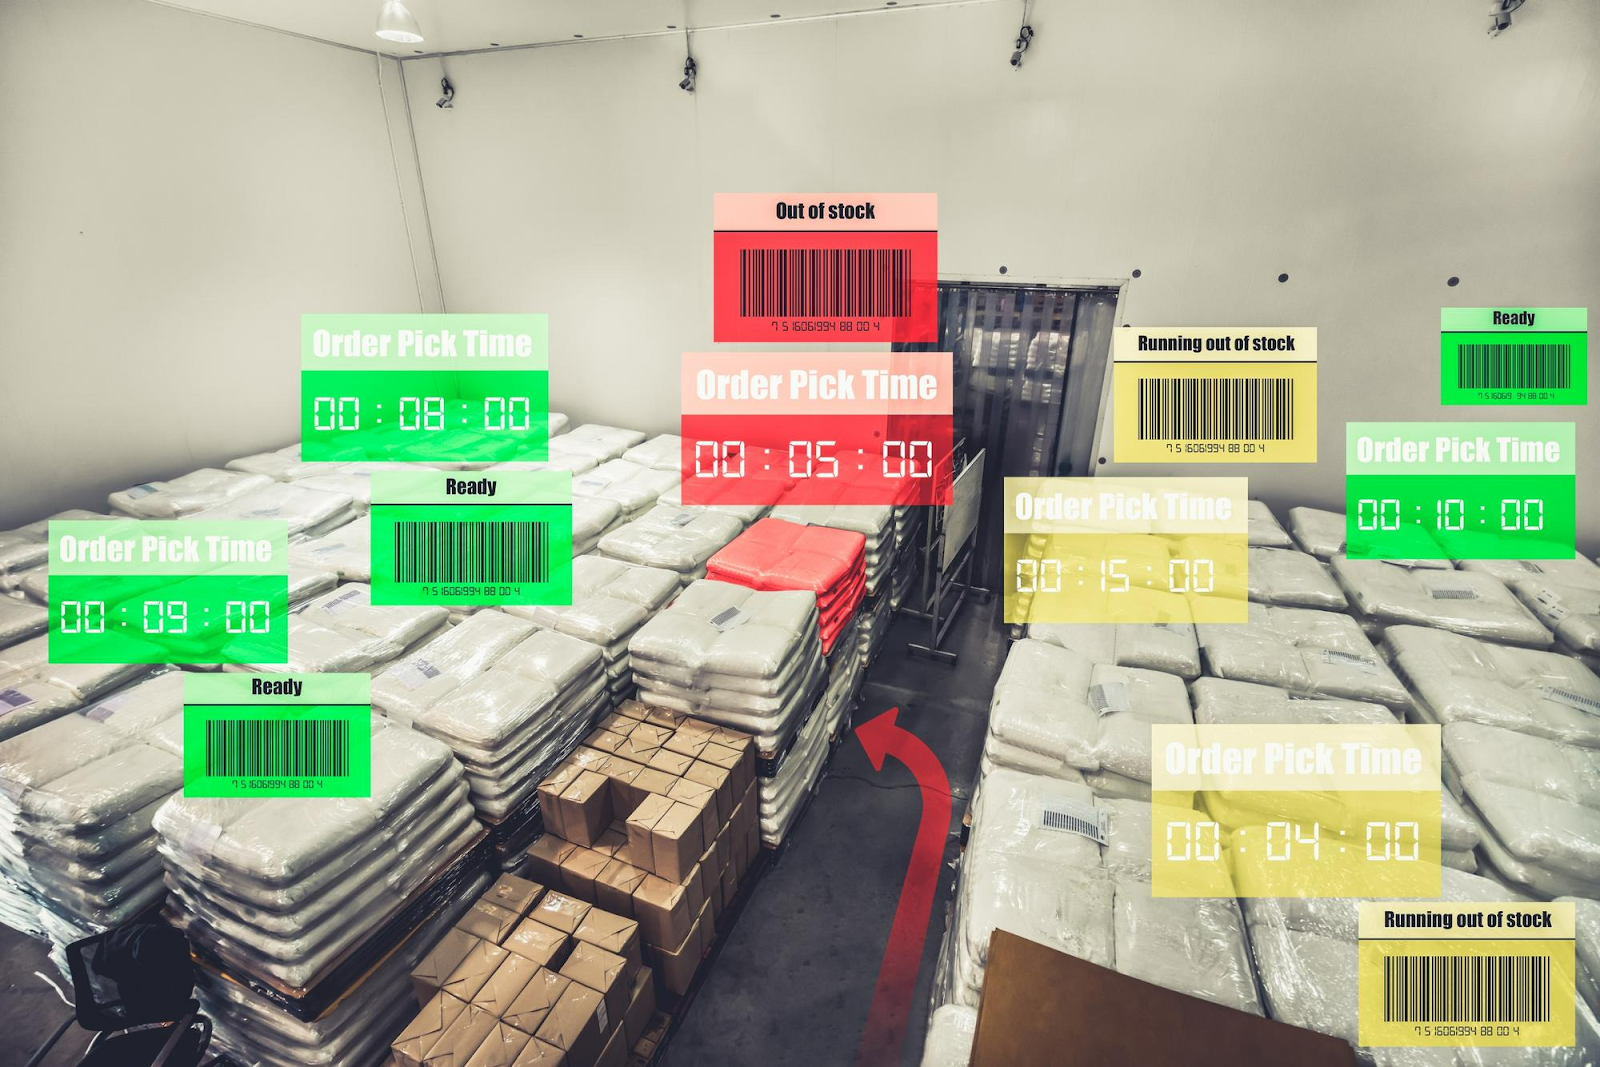 Penggunaan sistem inventory perpetual mampu merekam data stok barang secara real time